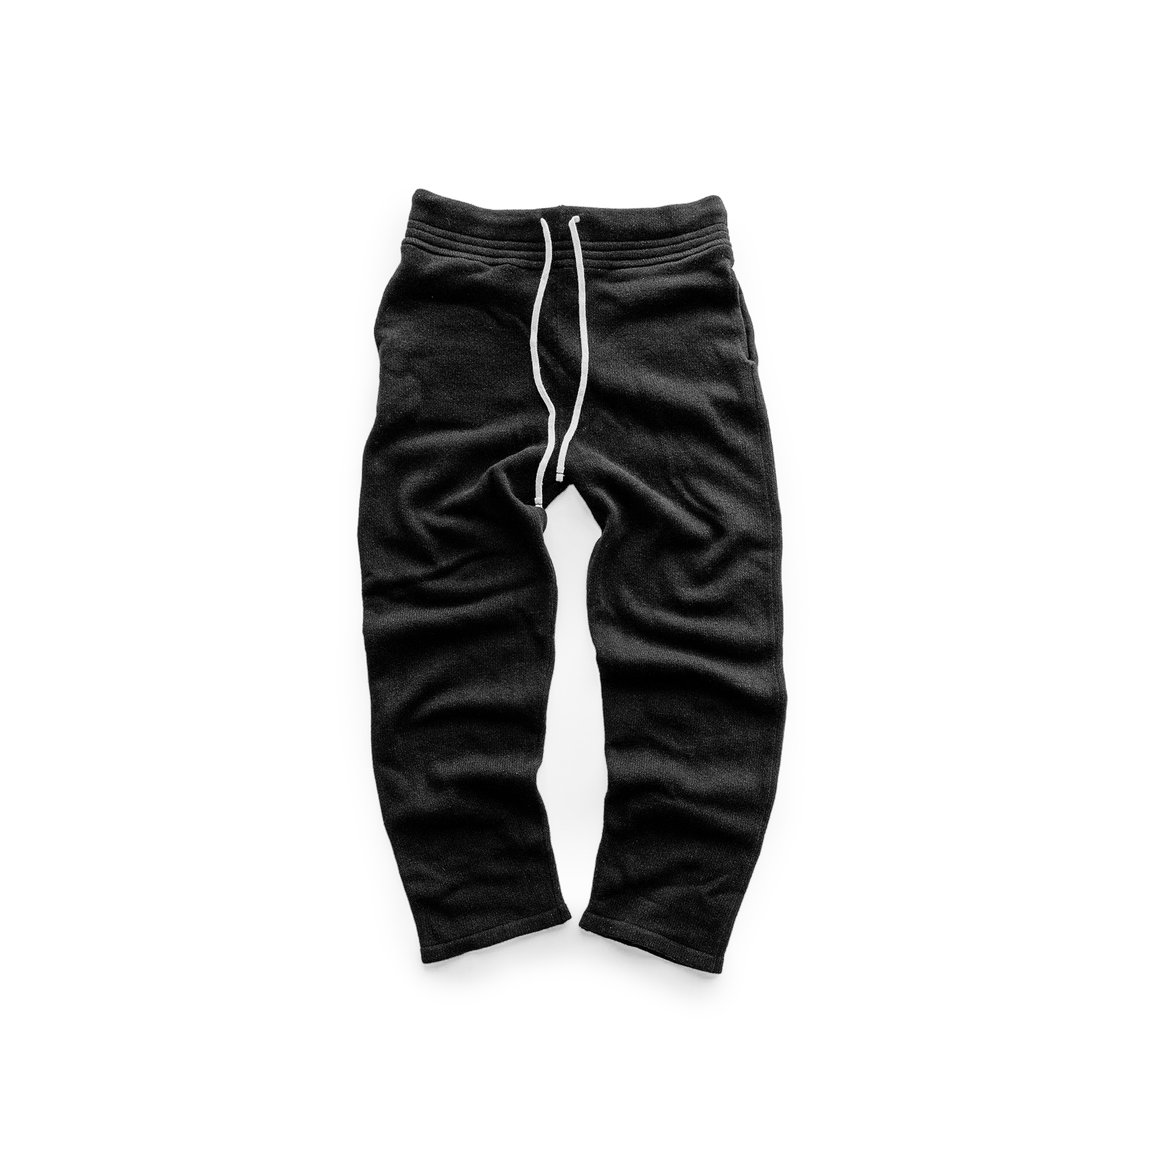 Les Tien Men's Cashmere Lounge Pant (Black) - Les Tien Men's Cashmere Lounge Pant (Black) - 